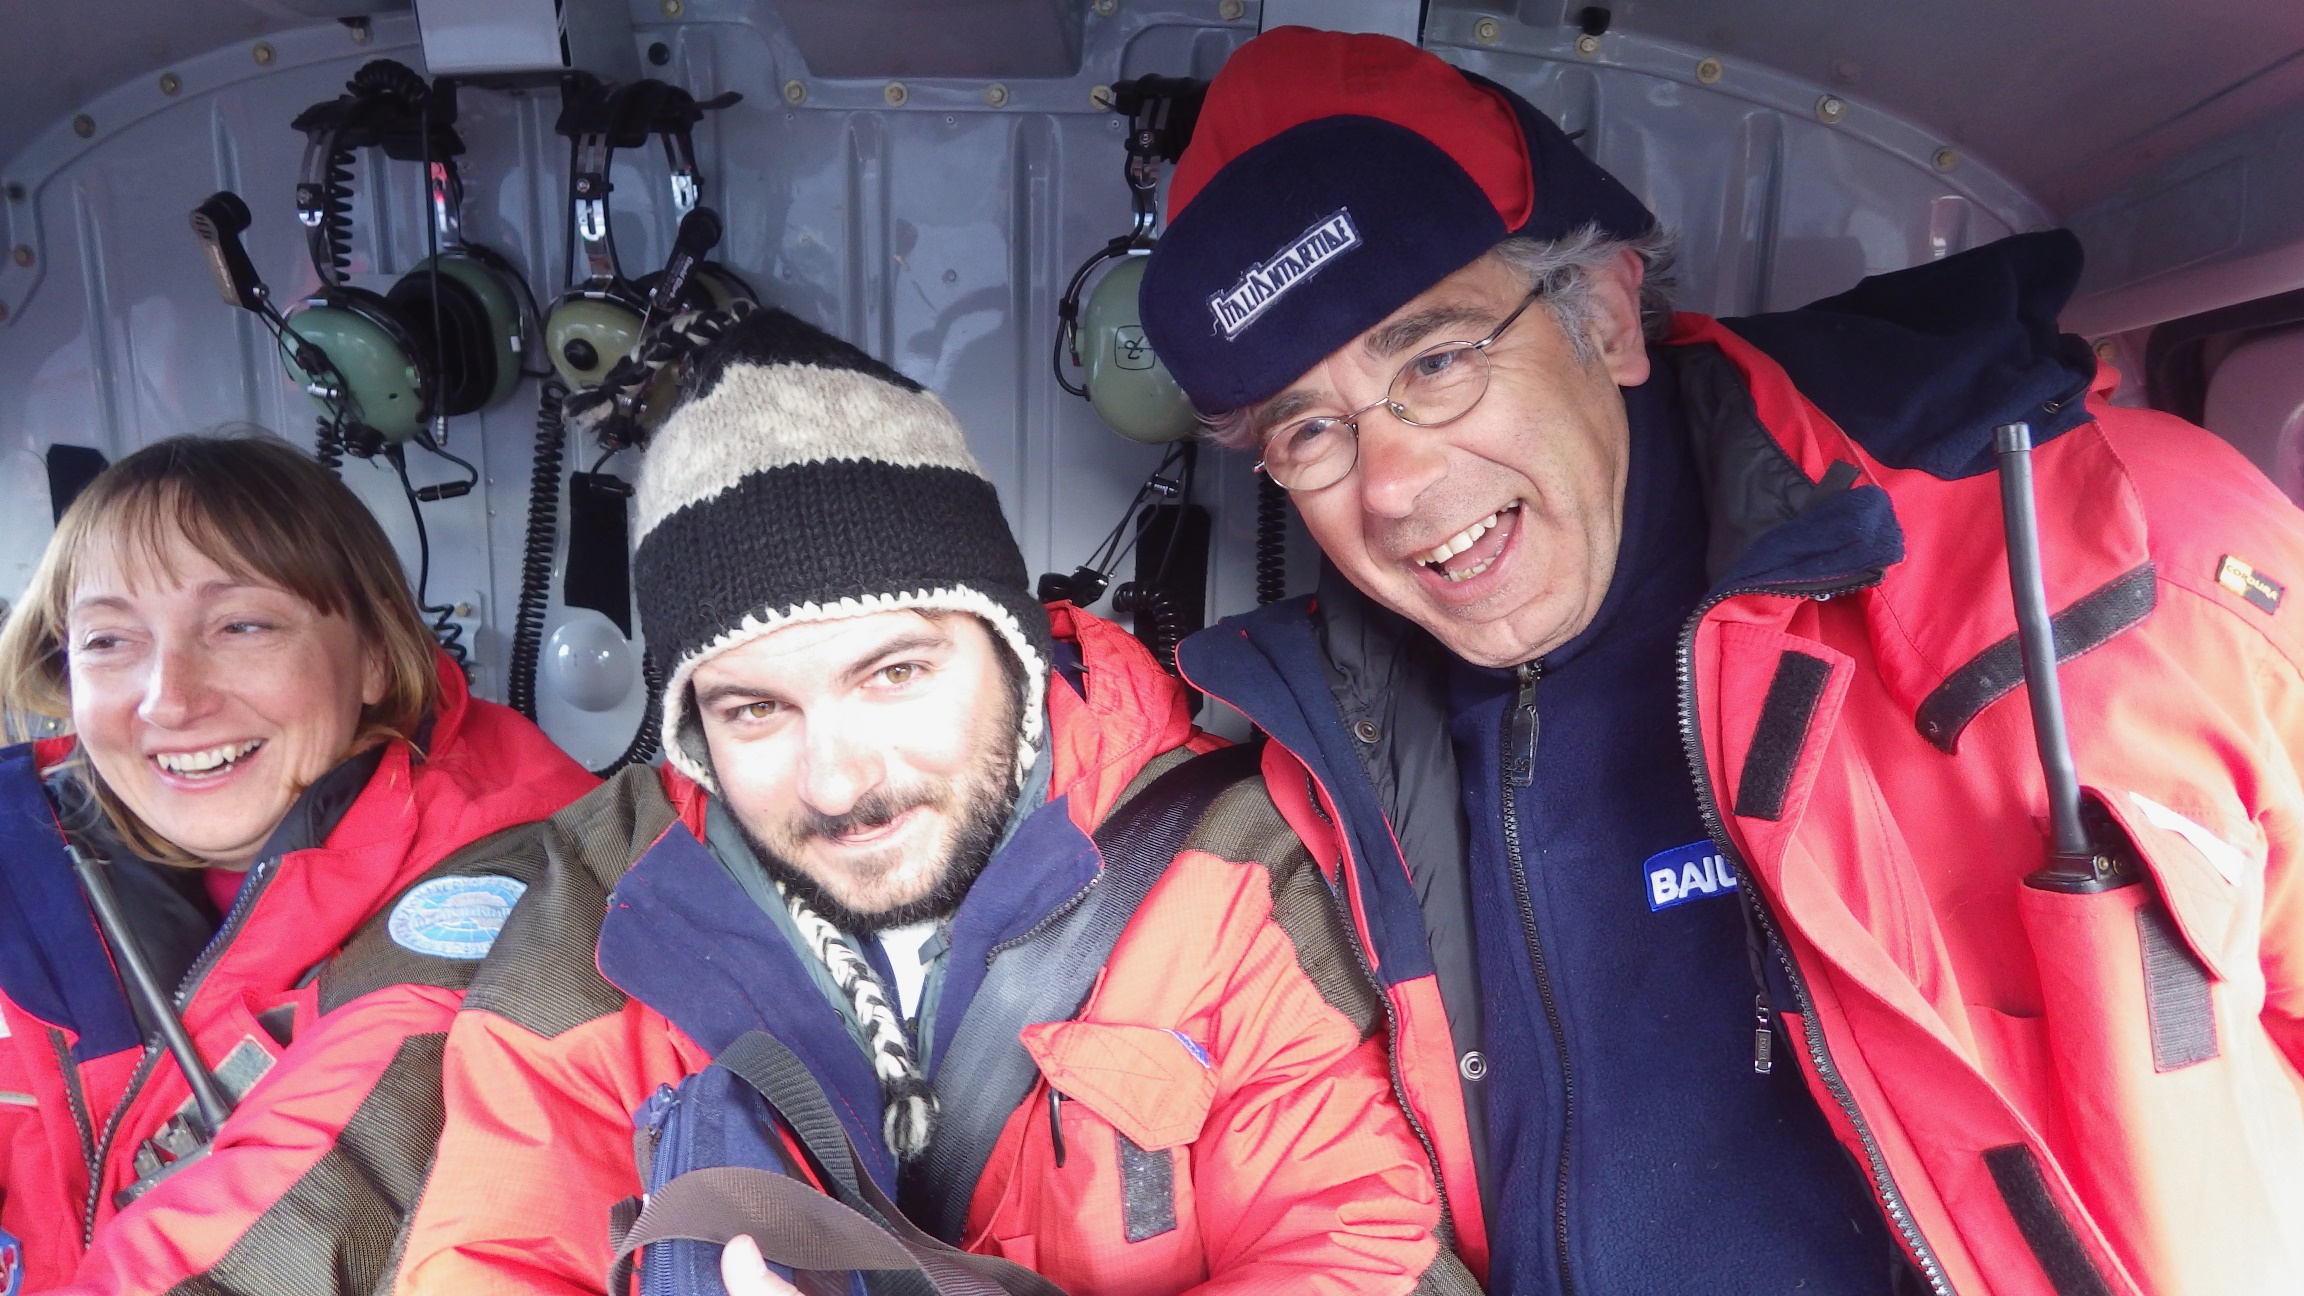 Tre ricercatori dell’Università di Siena in viaggio verso il Polo sud